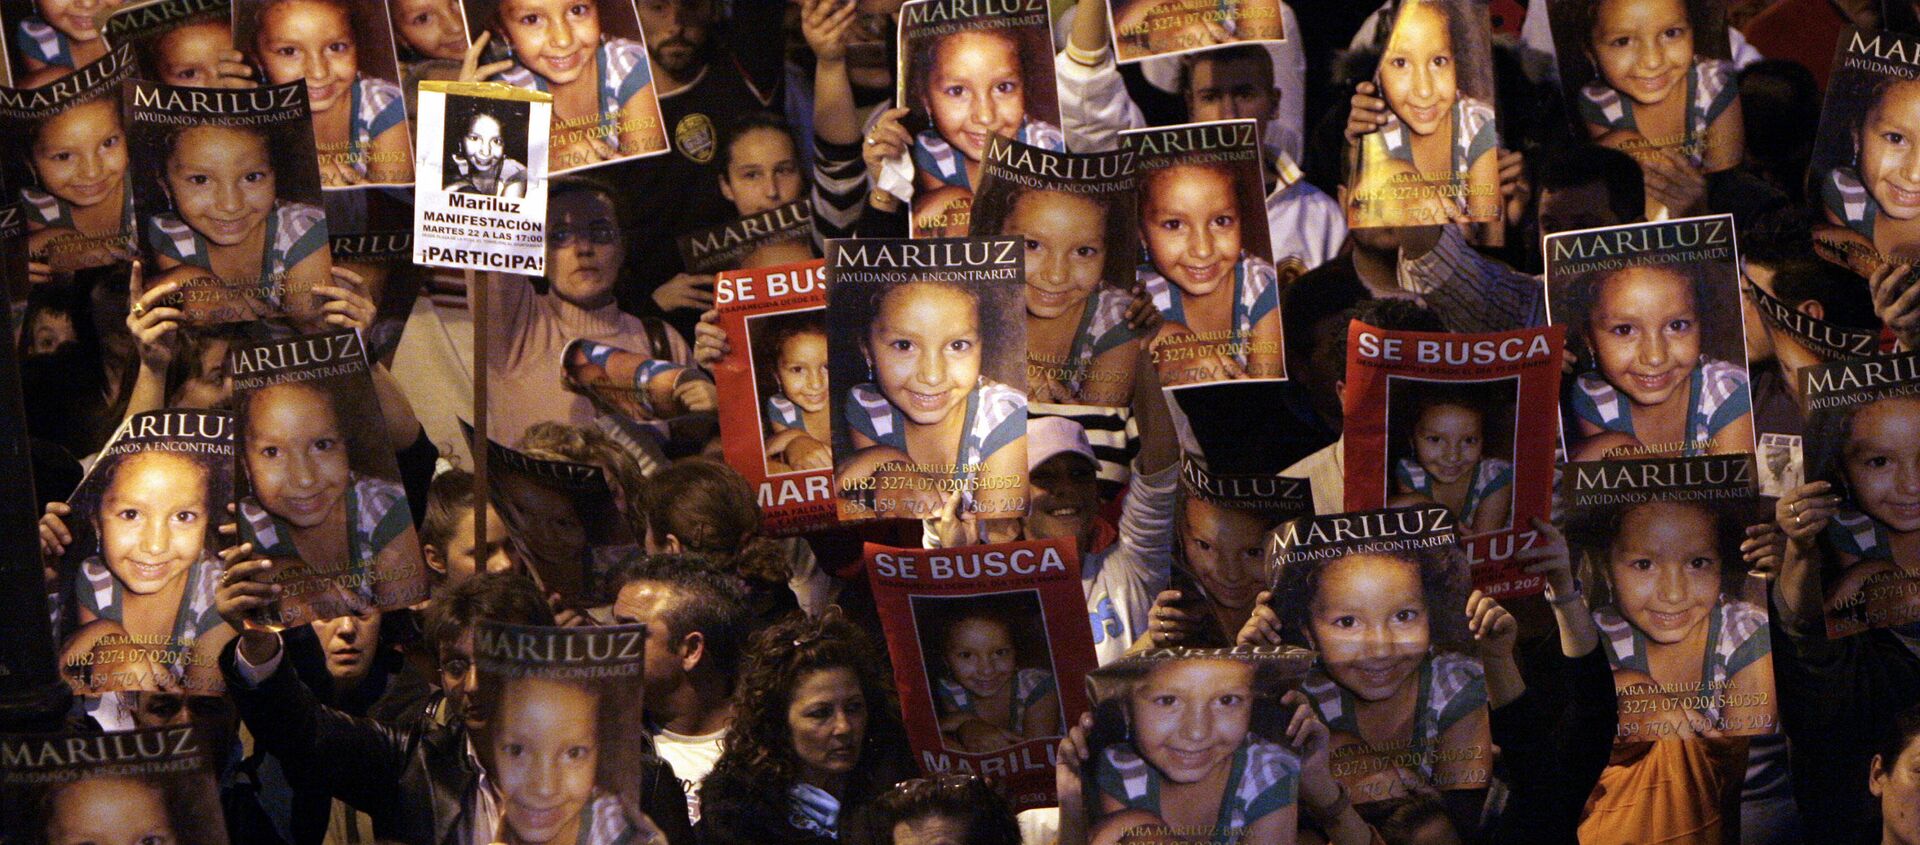 Manifestación de 2008 por la búsqueda de la niña Mari Luz Cortés, en Huelva  - Sputnik Mundo, 1920, 09.07.2020